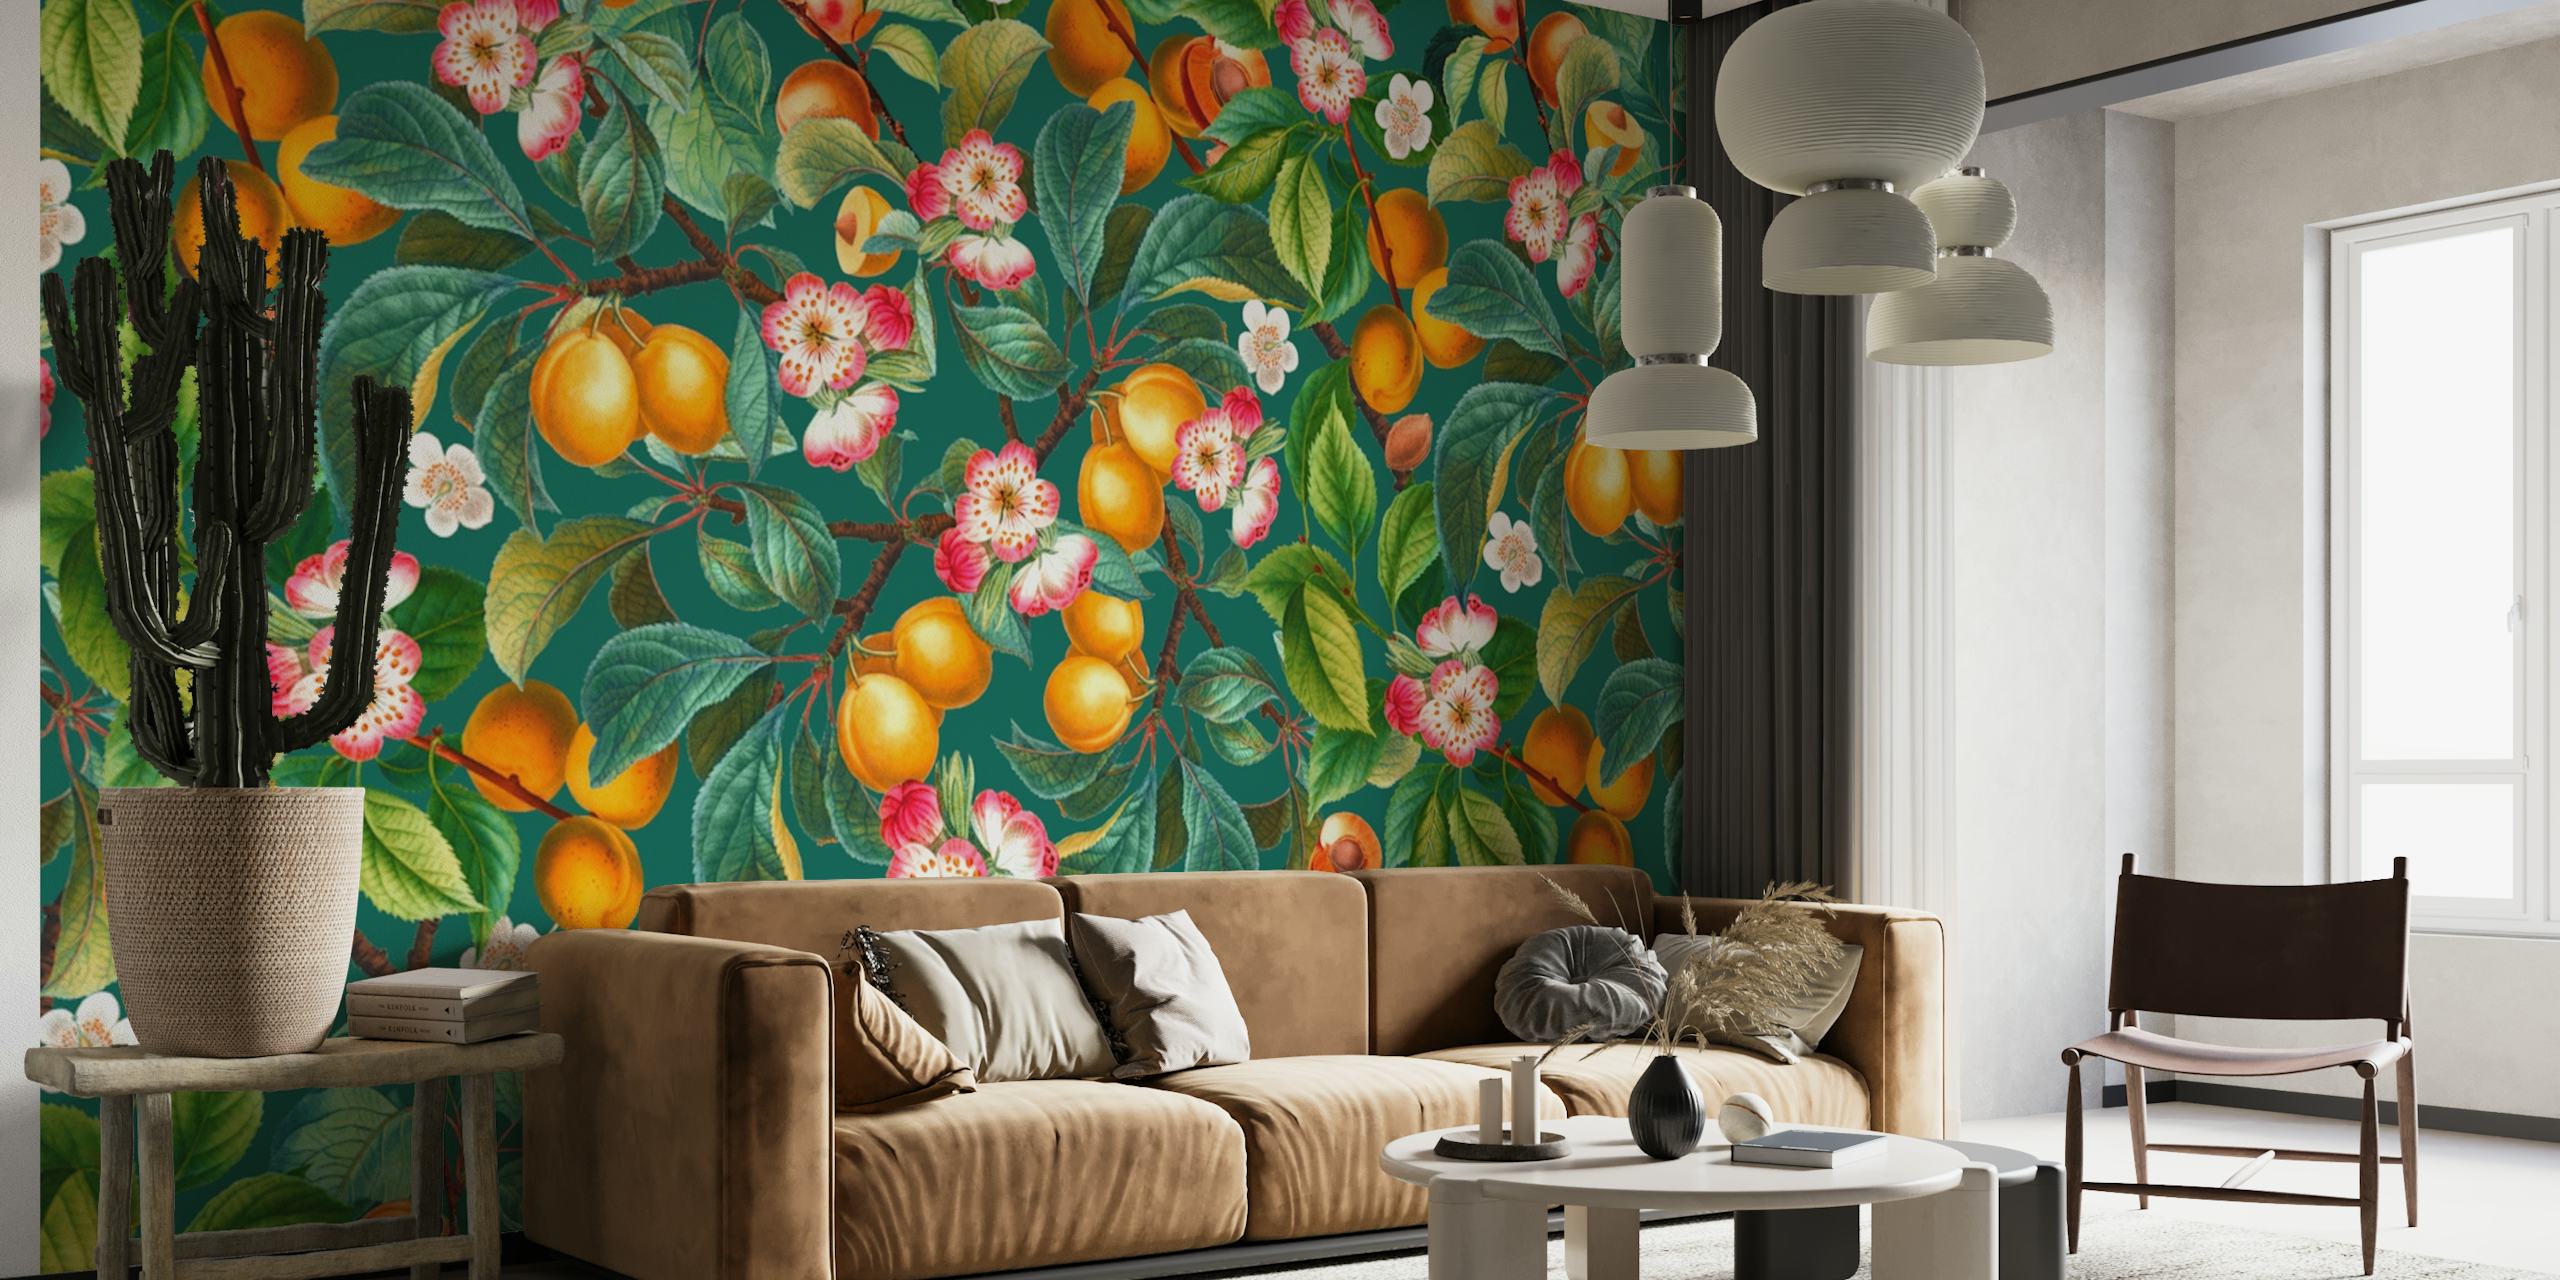 Rehevä hedelmä- ja kukkakuvioinen seinämaalaus appelsiineja ja kukkia